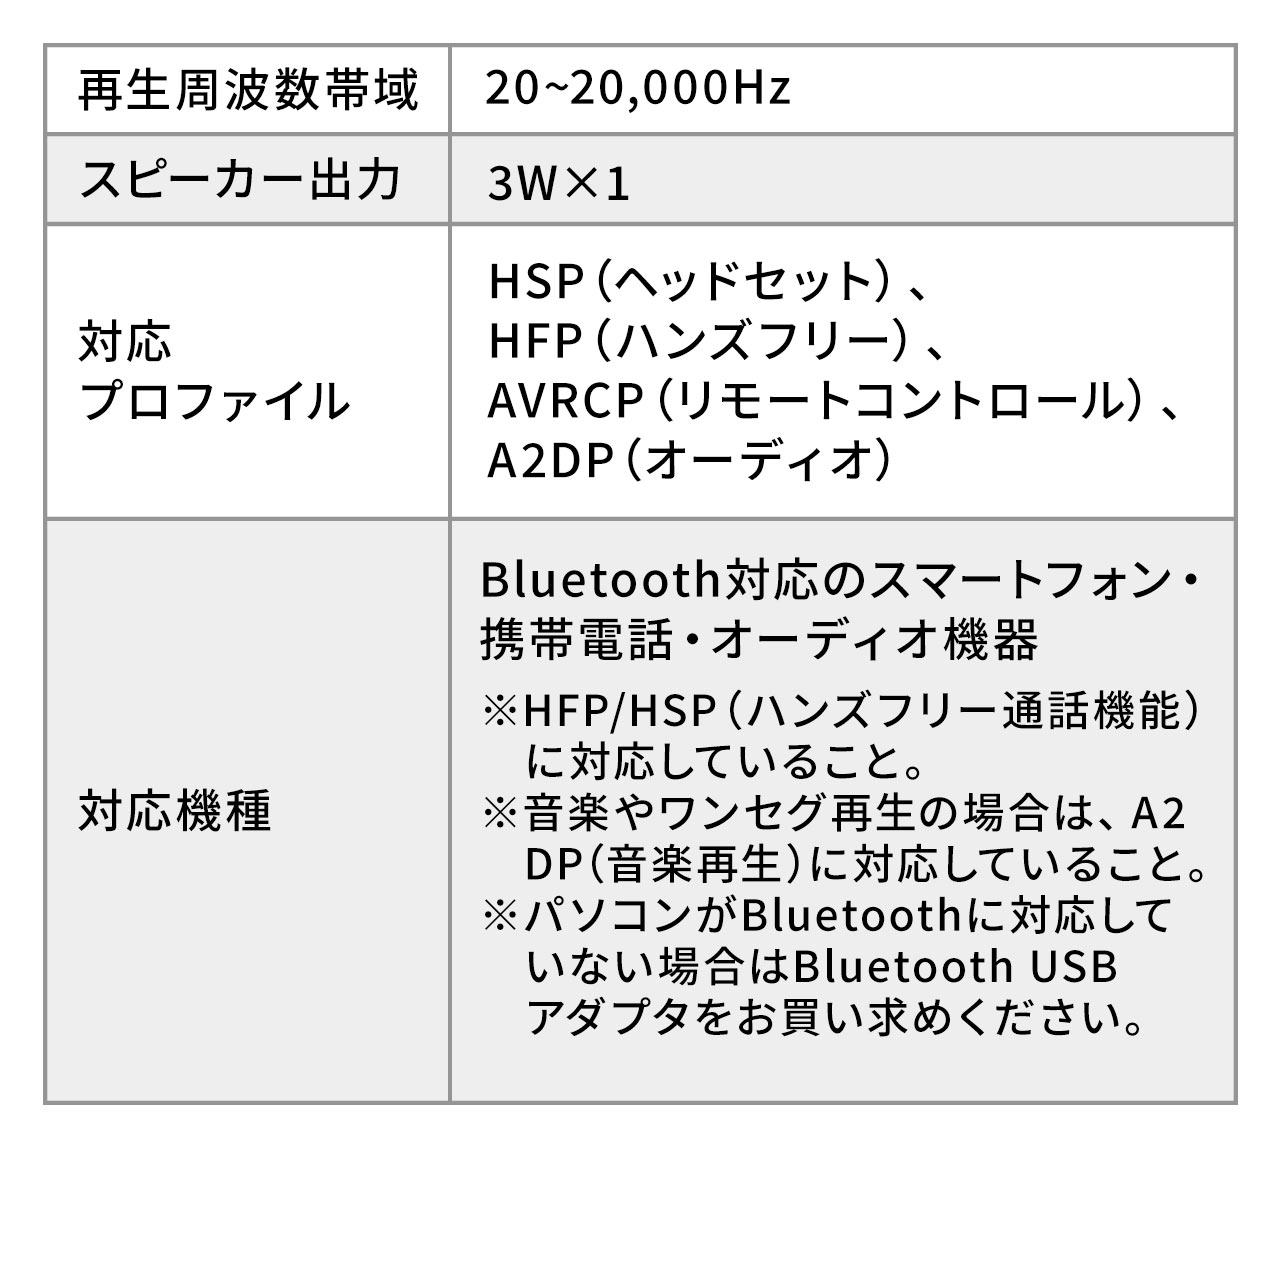 ԍ BluetoothXs[J[tH nYt[ʘb yĐΉ Bluetooth4.1 3Wo mCYLZ  2䓯ڑ USB 400-BTCAR003